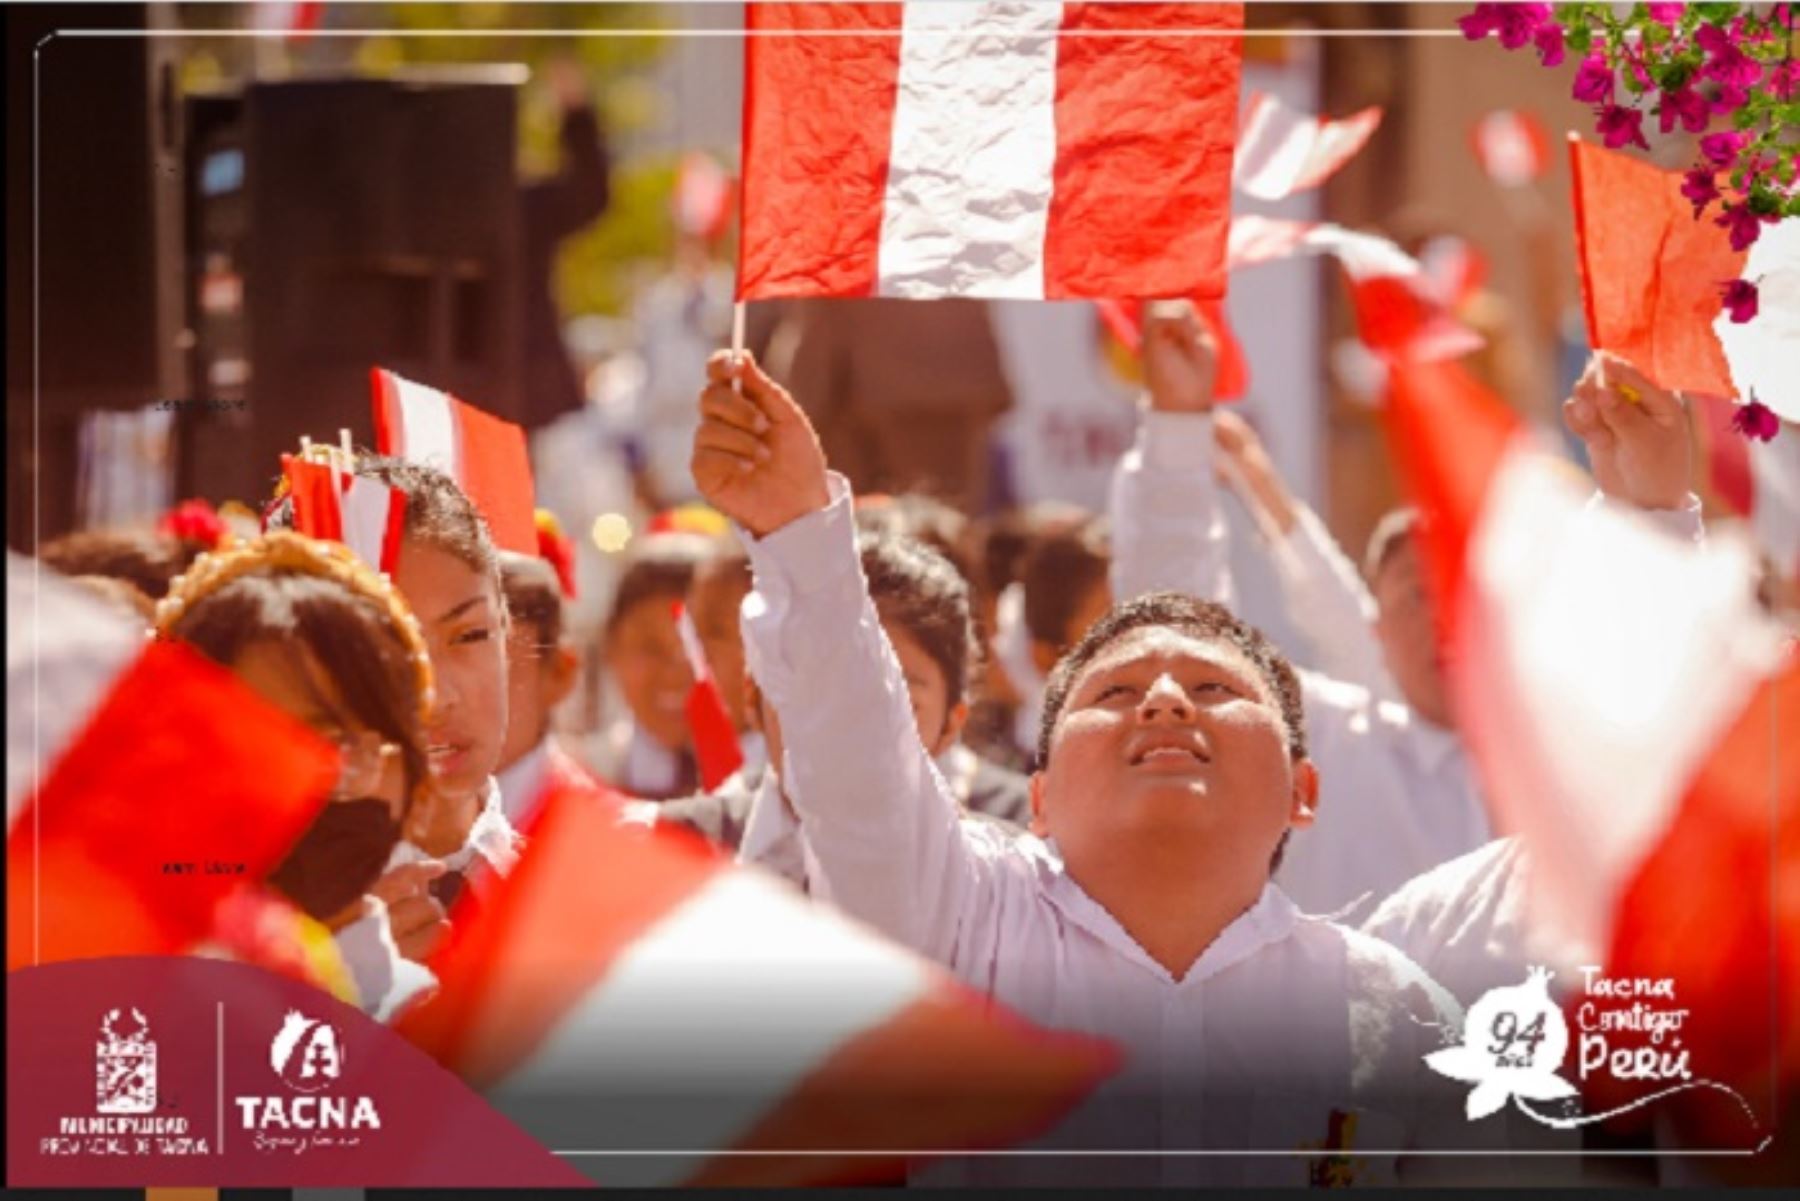 Además de los actos centrales continuarán las actividades culturales, artísticas y gastronómicas- que se han llevado a cabo todos estos días, organizadas por la Municipalidad Provincial de Tacna en coordinación con organizaciones públicas, patrioticas y privadas,